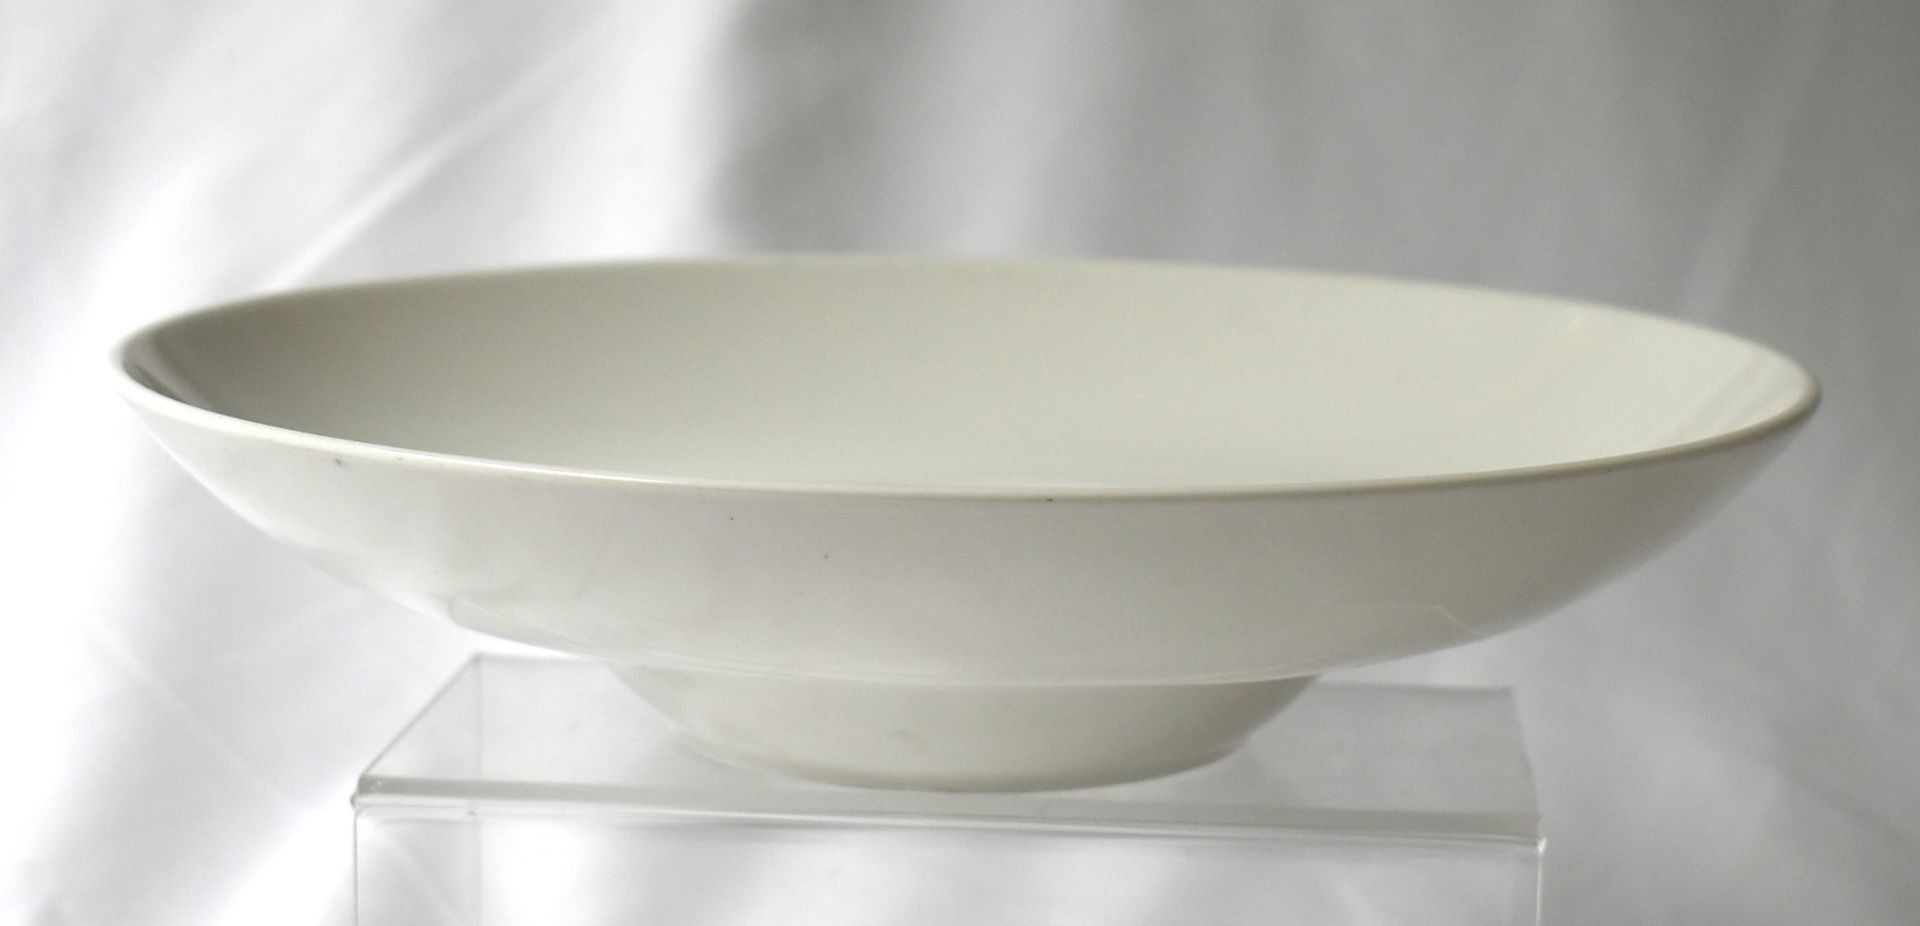 9 x RAK Porcelain Banquet 26cm Ivory Porcelain Wide Rim Soup Bowls - CL011 - Ref: PX278 - - Image 5 of 6